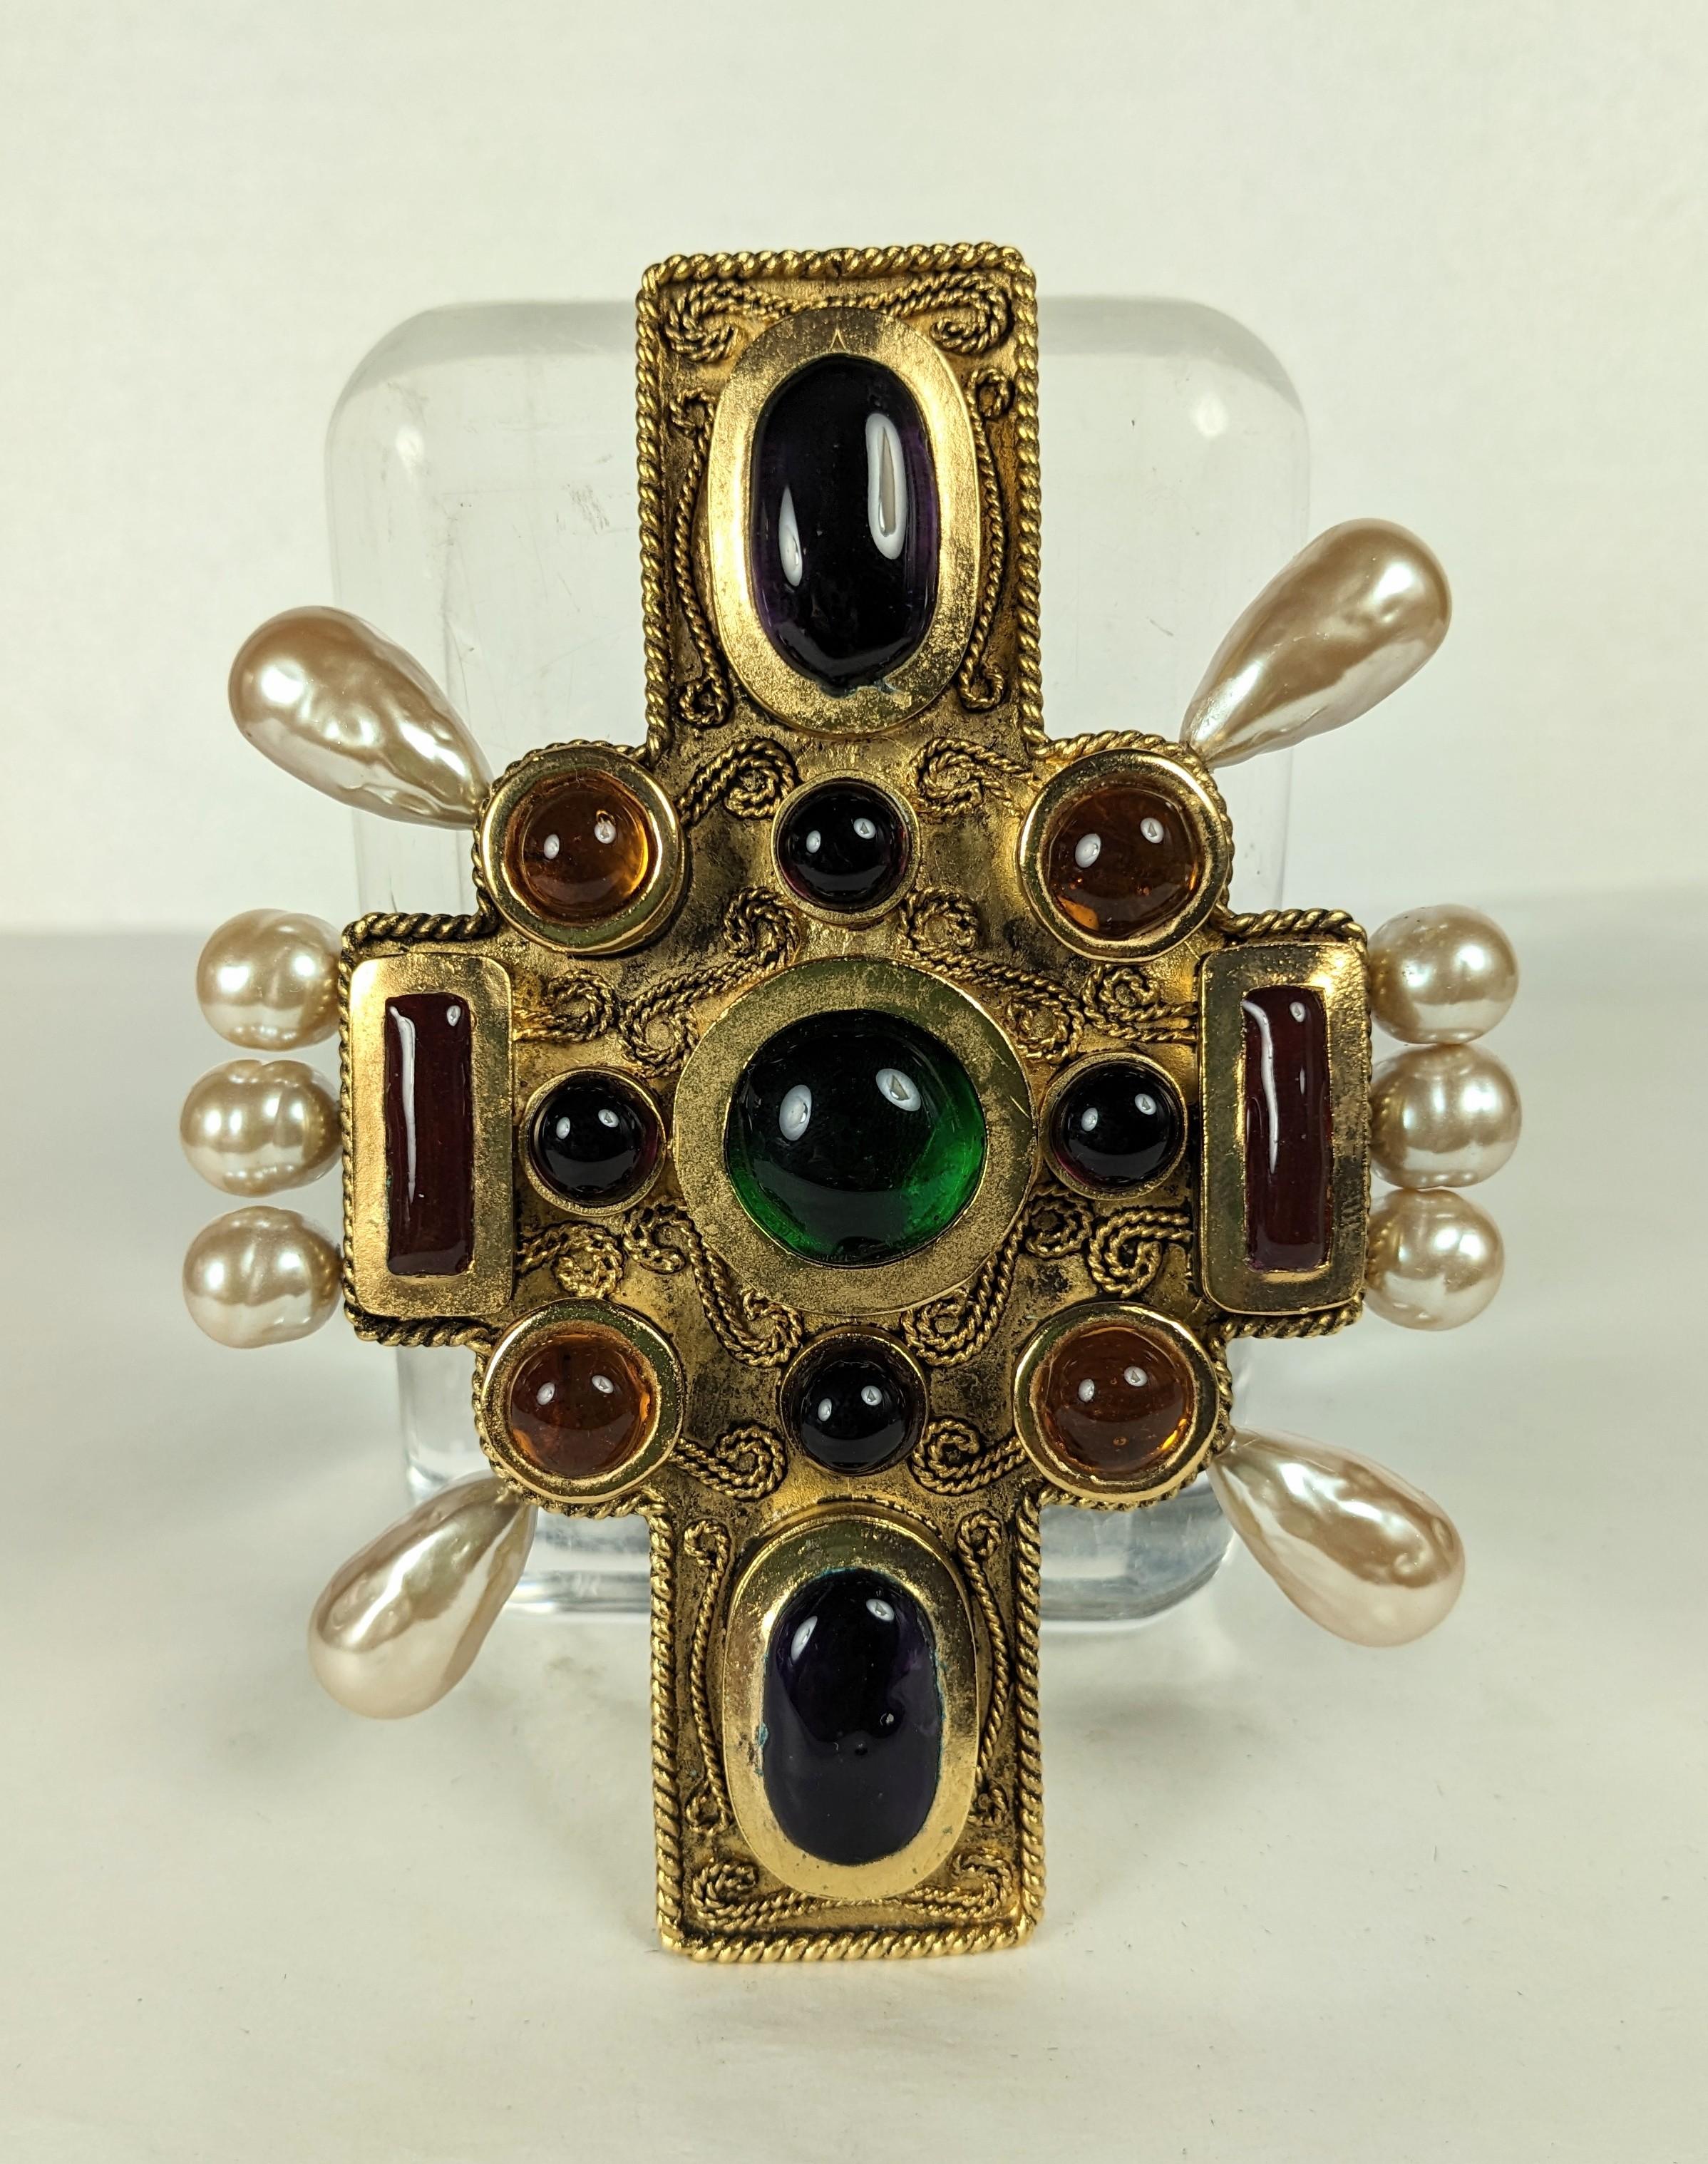 Massive Chanel-Kreuzbrosche in Smaragd-, Rubin-, Topas- und Amethysttönen aus gegossenen Glaskabochons mit faux-barocken runden und birnenförmigen Perlen. Verschlungenes Drahtgeflecht auf antikem Gold. Auf der Rückseite befindet sich eine Schlaufe